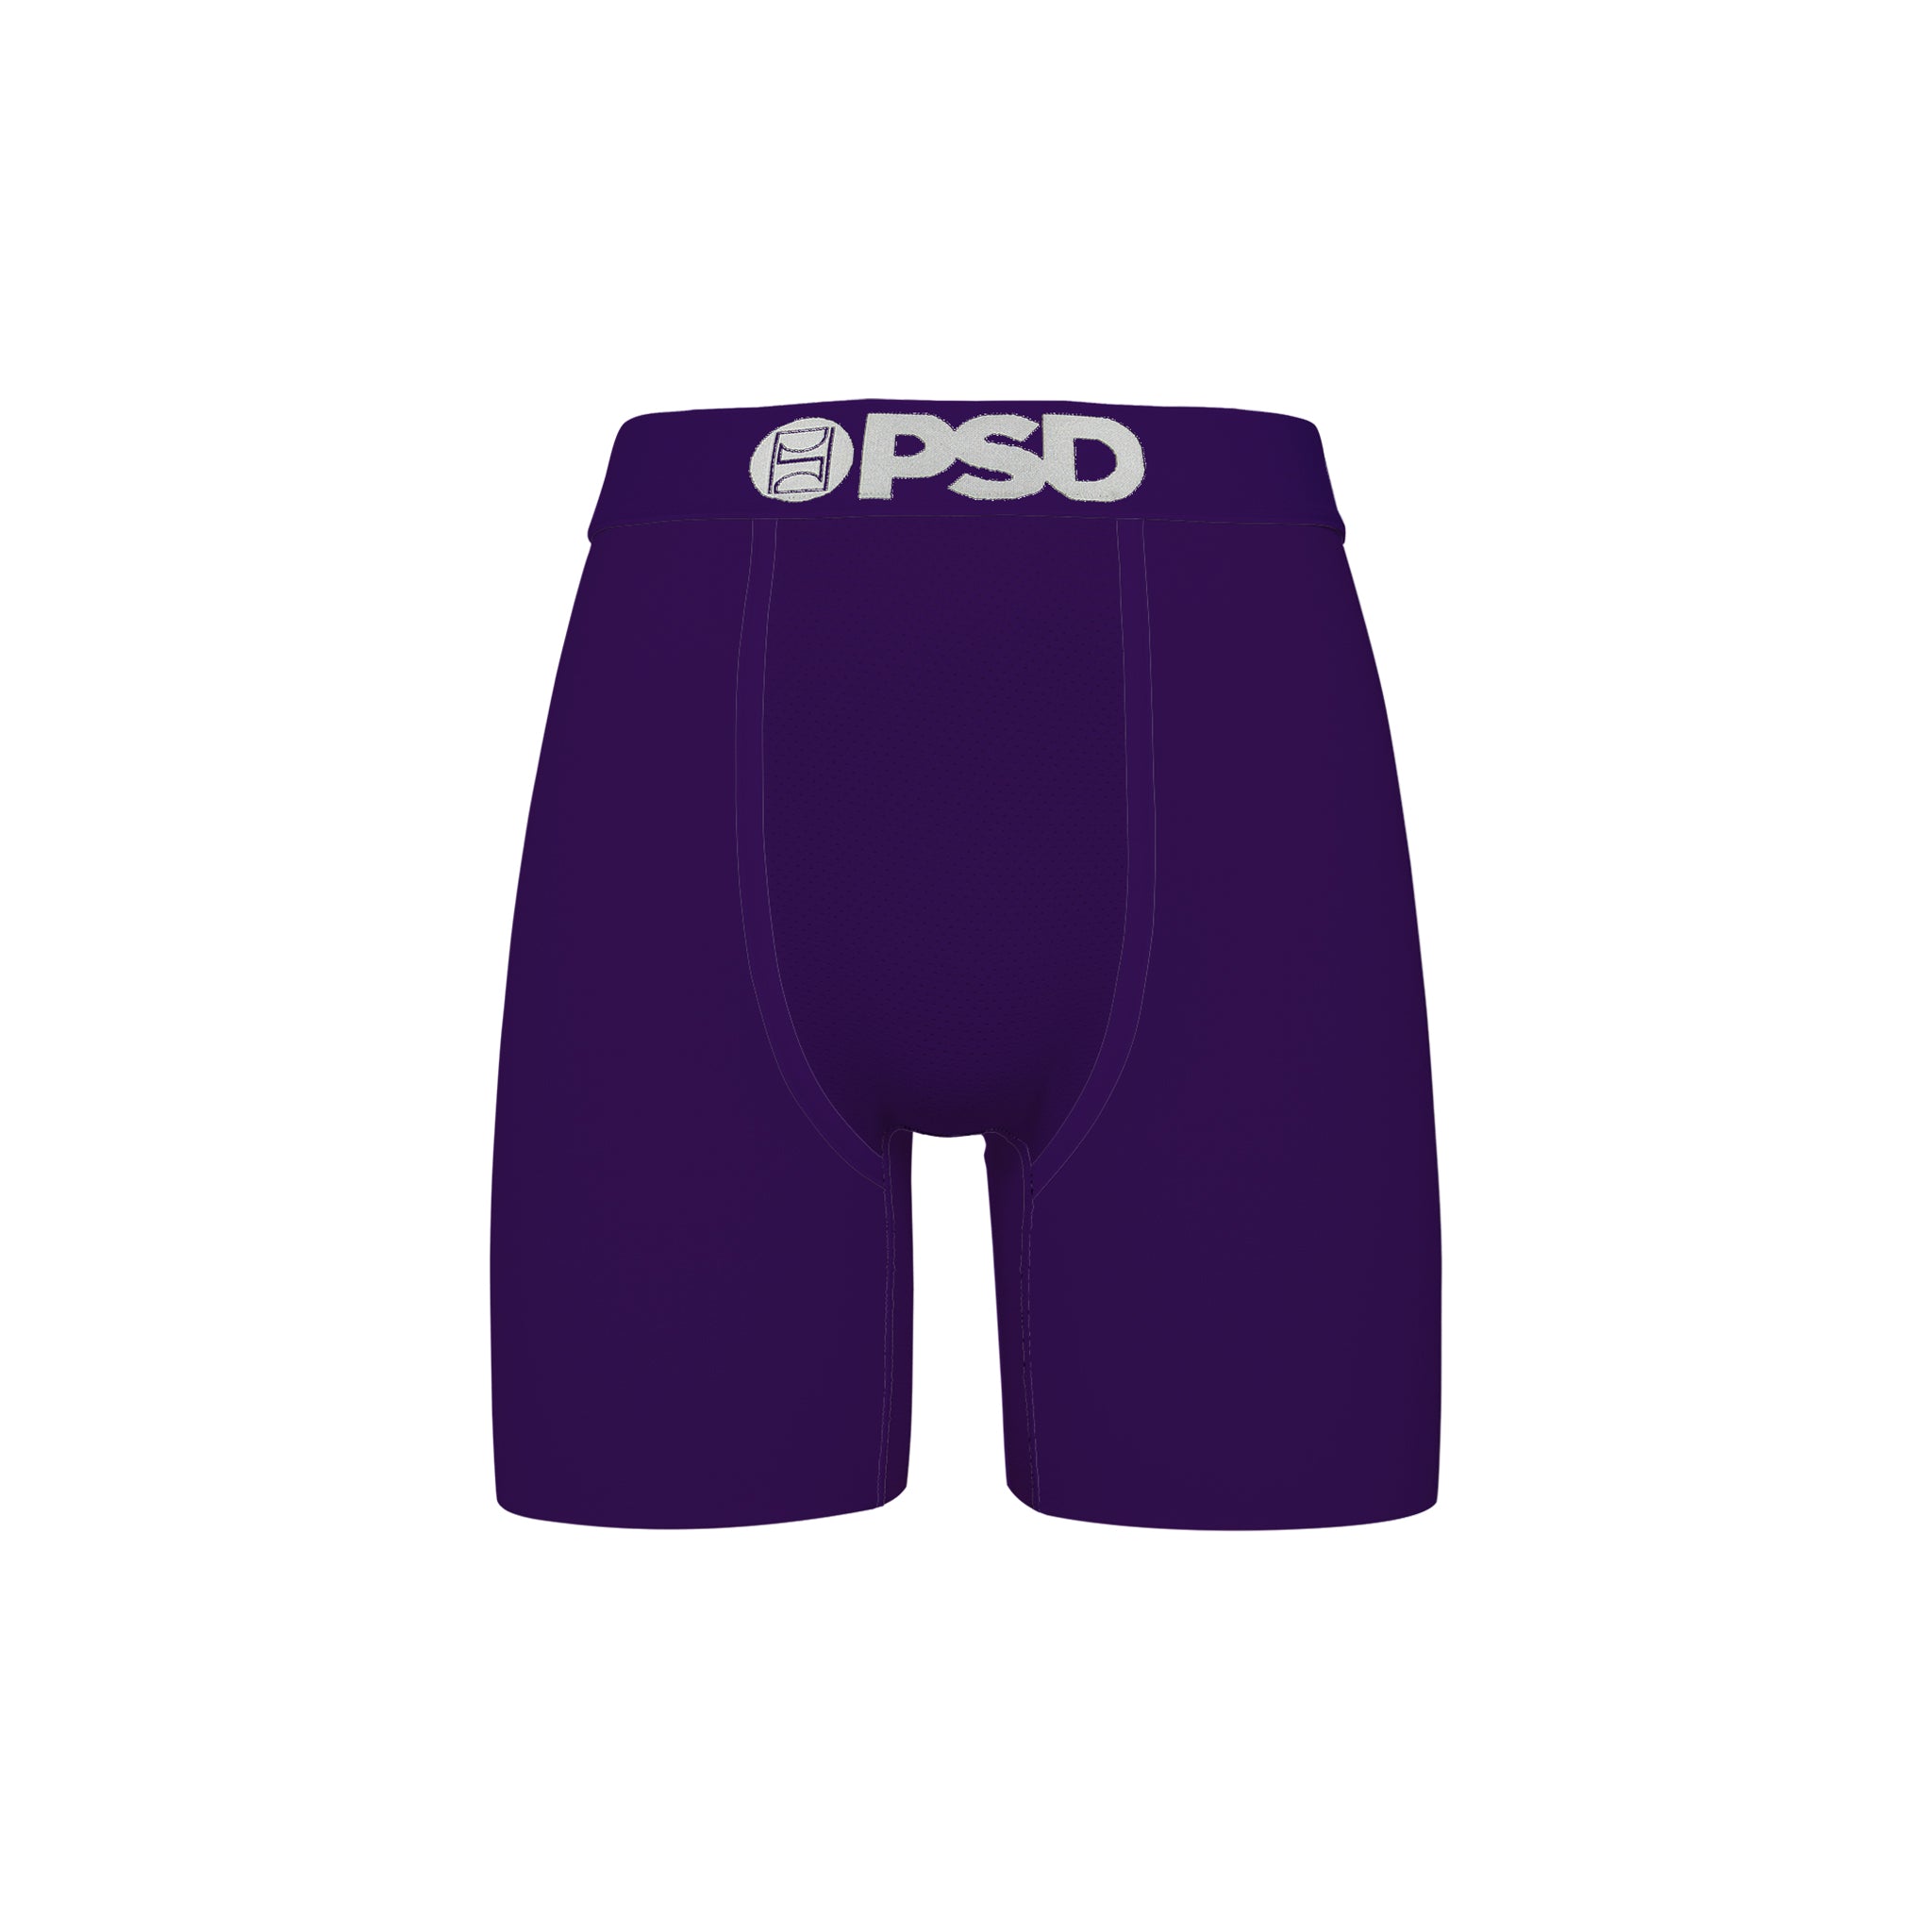 PSD "Dark Purple Cotton" Underwear